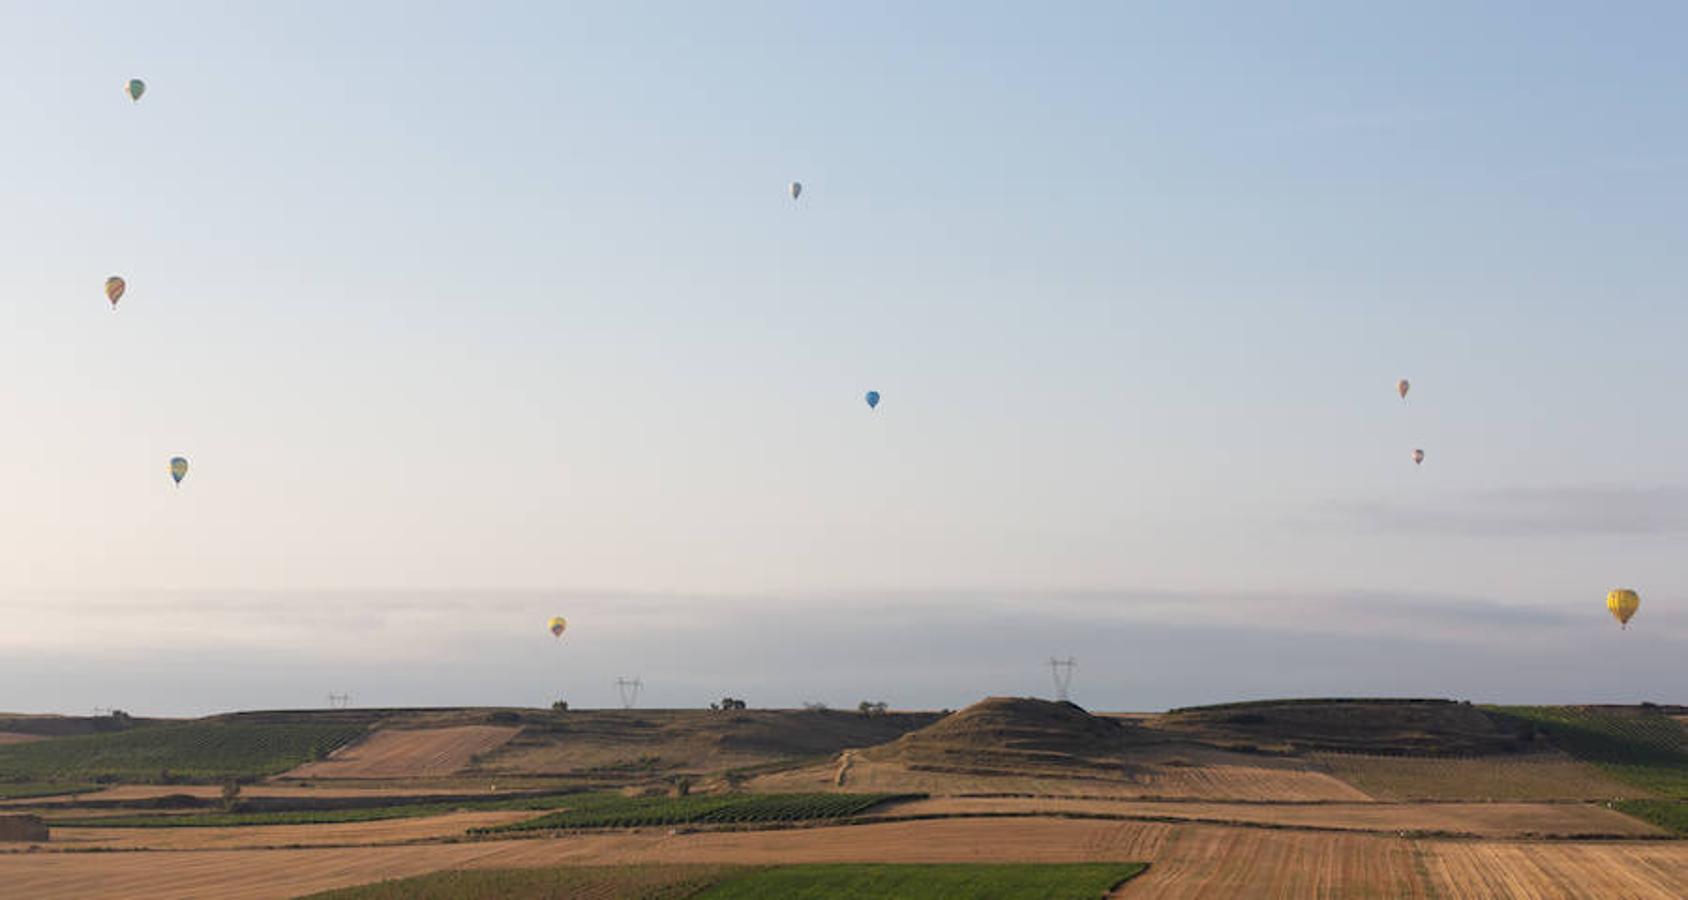 El cielo de Haro se llena estos días de los colores de 26 globos aerostáticos que compiten en el XLV Campeonato de España Nacional de Globos Aerostáticos, que concluirá el próximo día 2 y en el que se recorren del orden de 15 kilómetros por vuelo.